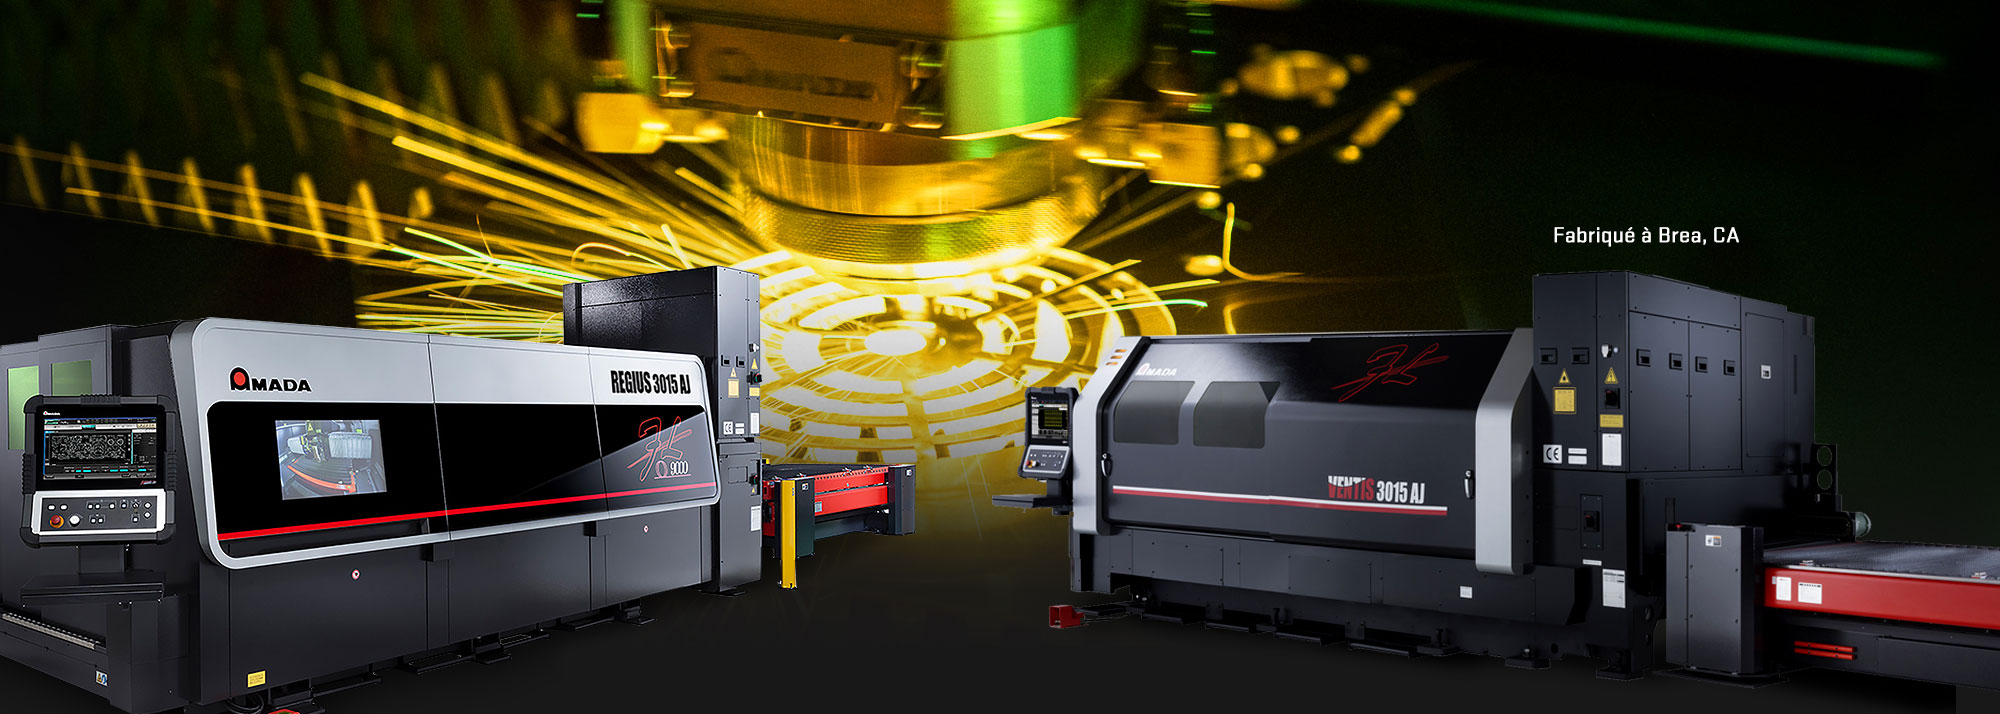 REGIUS Series laser à  fibre linéaire | <a href='regius'>Plus d'informations</a>  •   VENTIS Series laser  à  fibre | <a href='ventis-aj'>Plus d'informations</a>